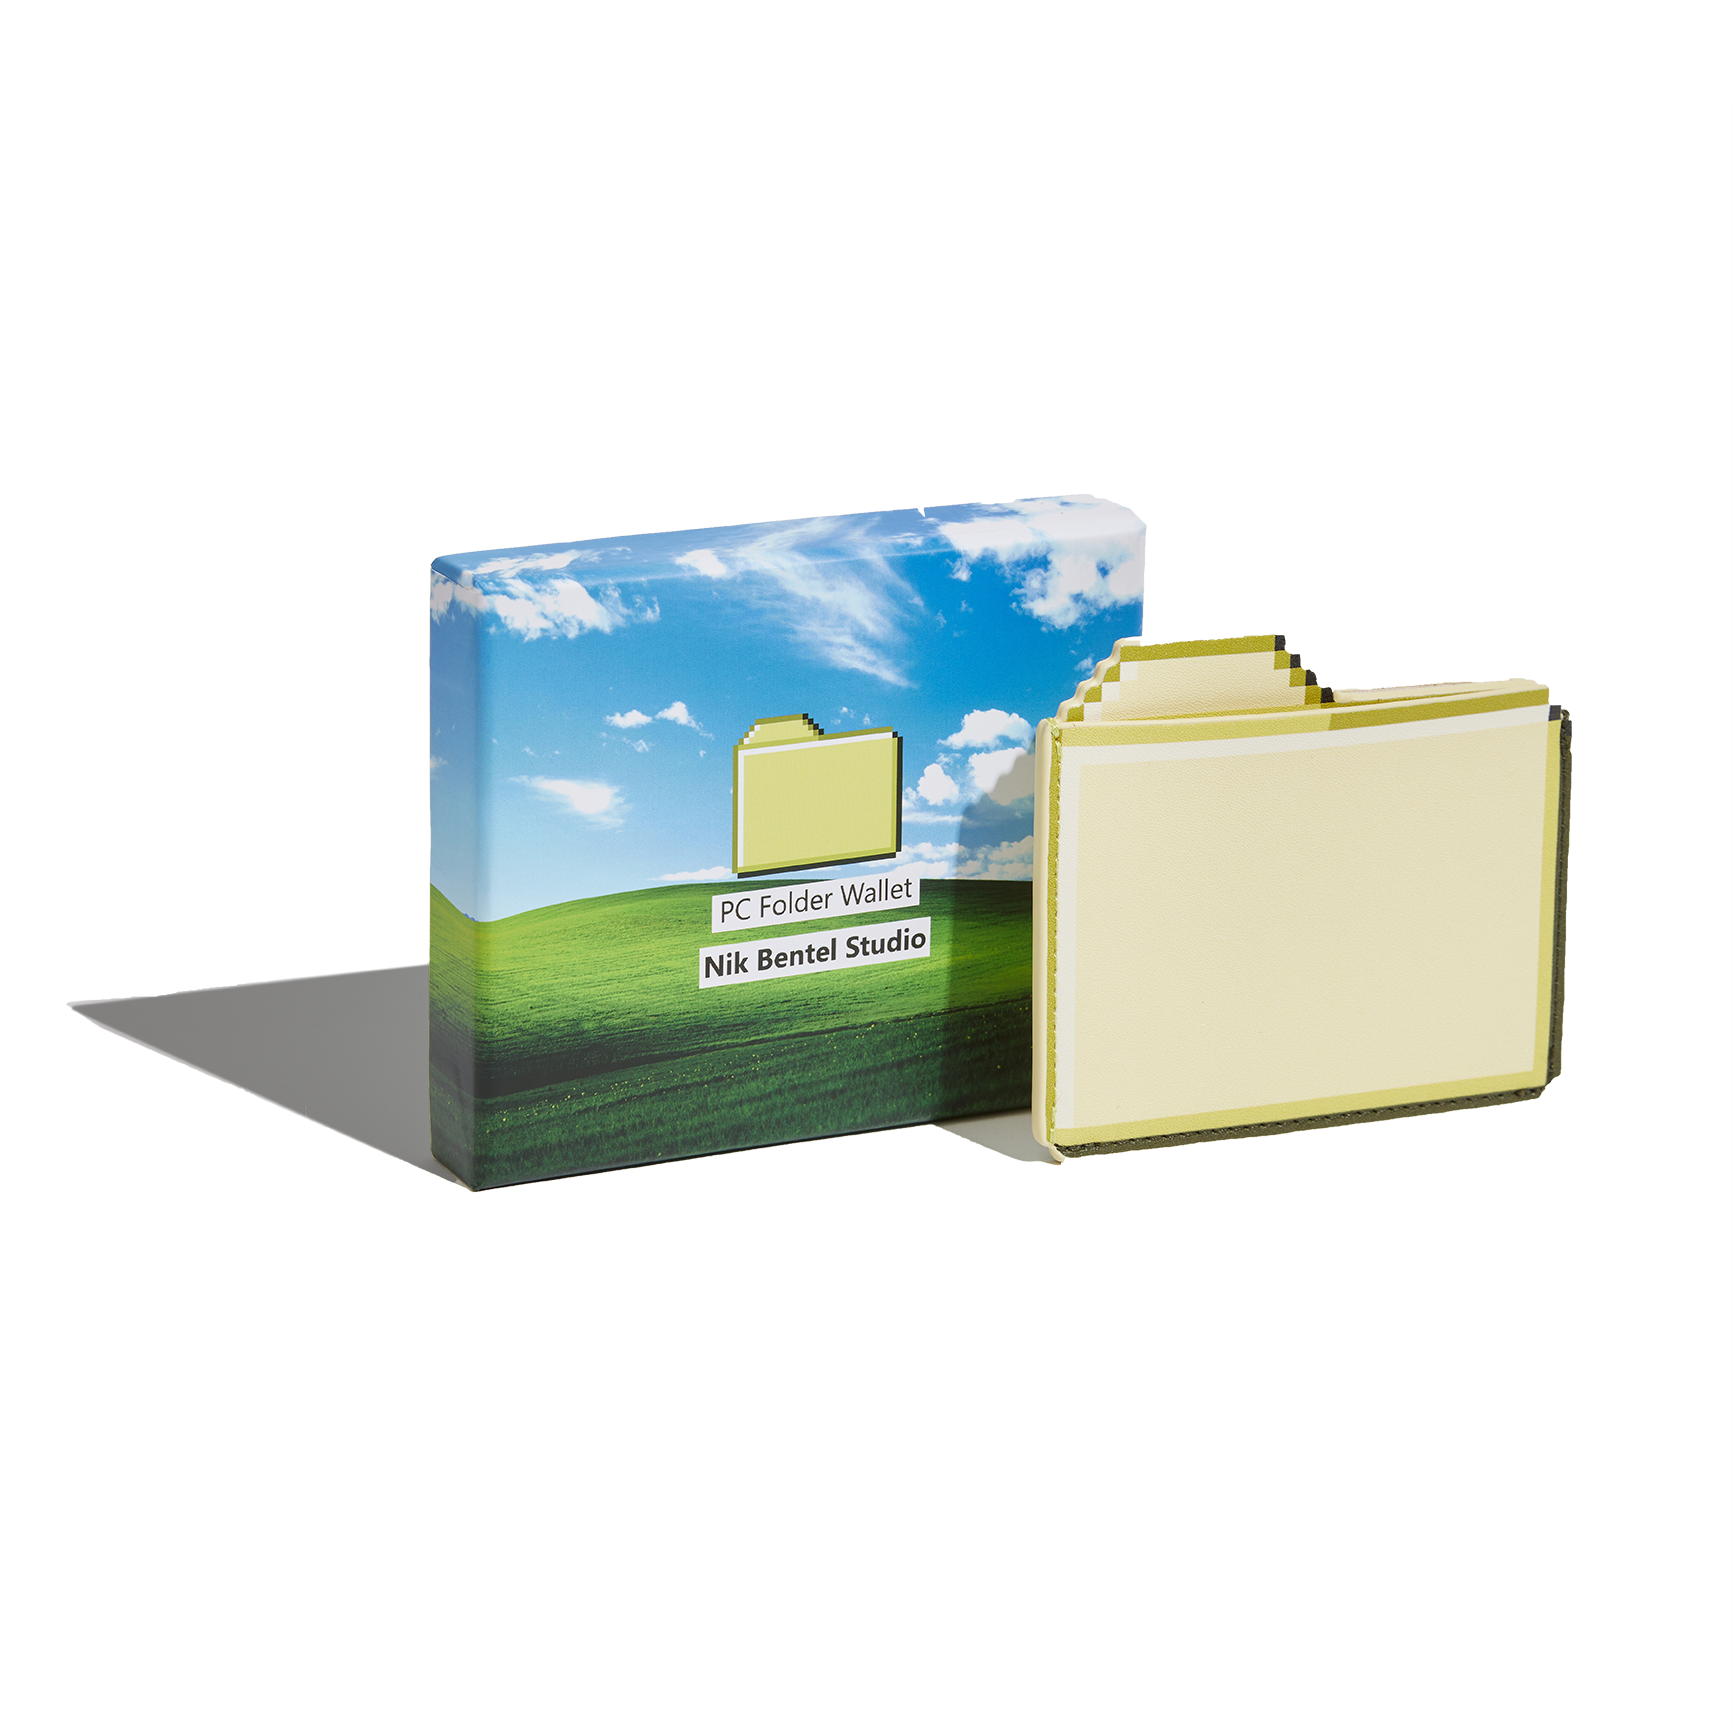 PC Folder Wallet